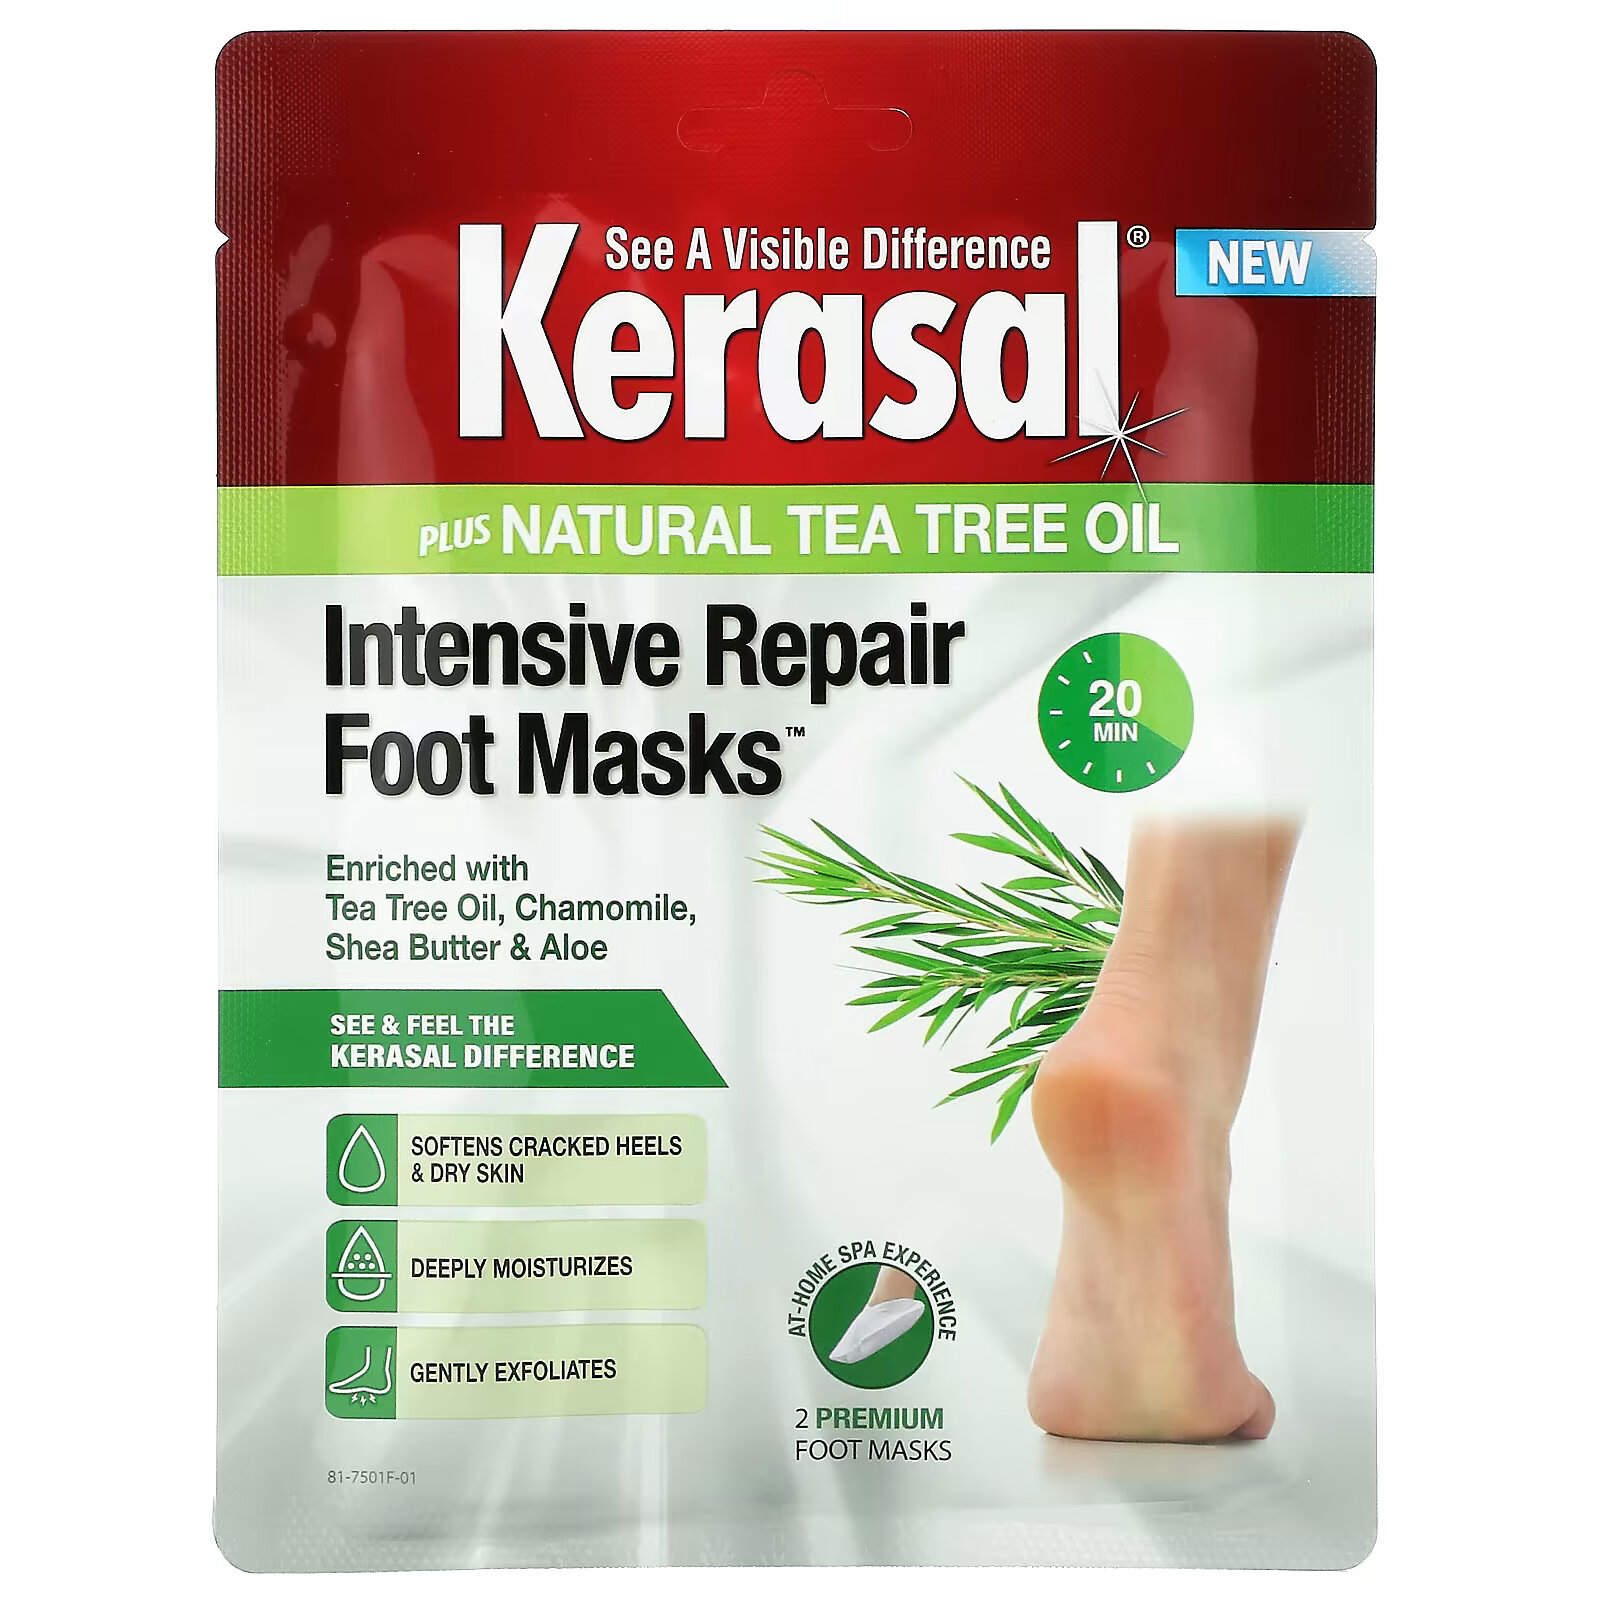 Восстанавливающие маски для ног Kerasal с натуральным маслом чайного дерева, 2 шт kerasal маски для ног интенсивного восстановления плюс натуральное масло чайного дерева 2 маски для ног